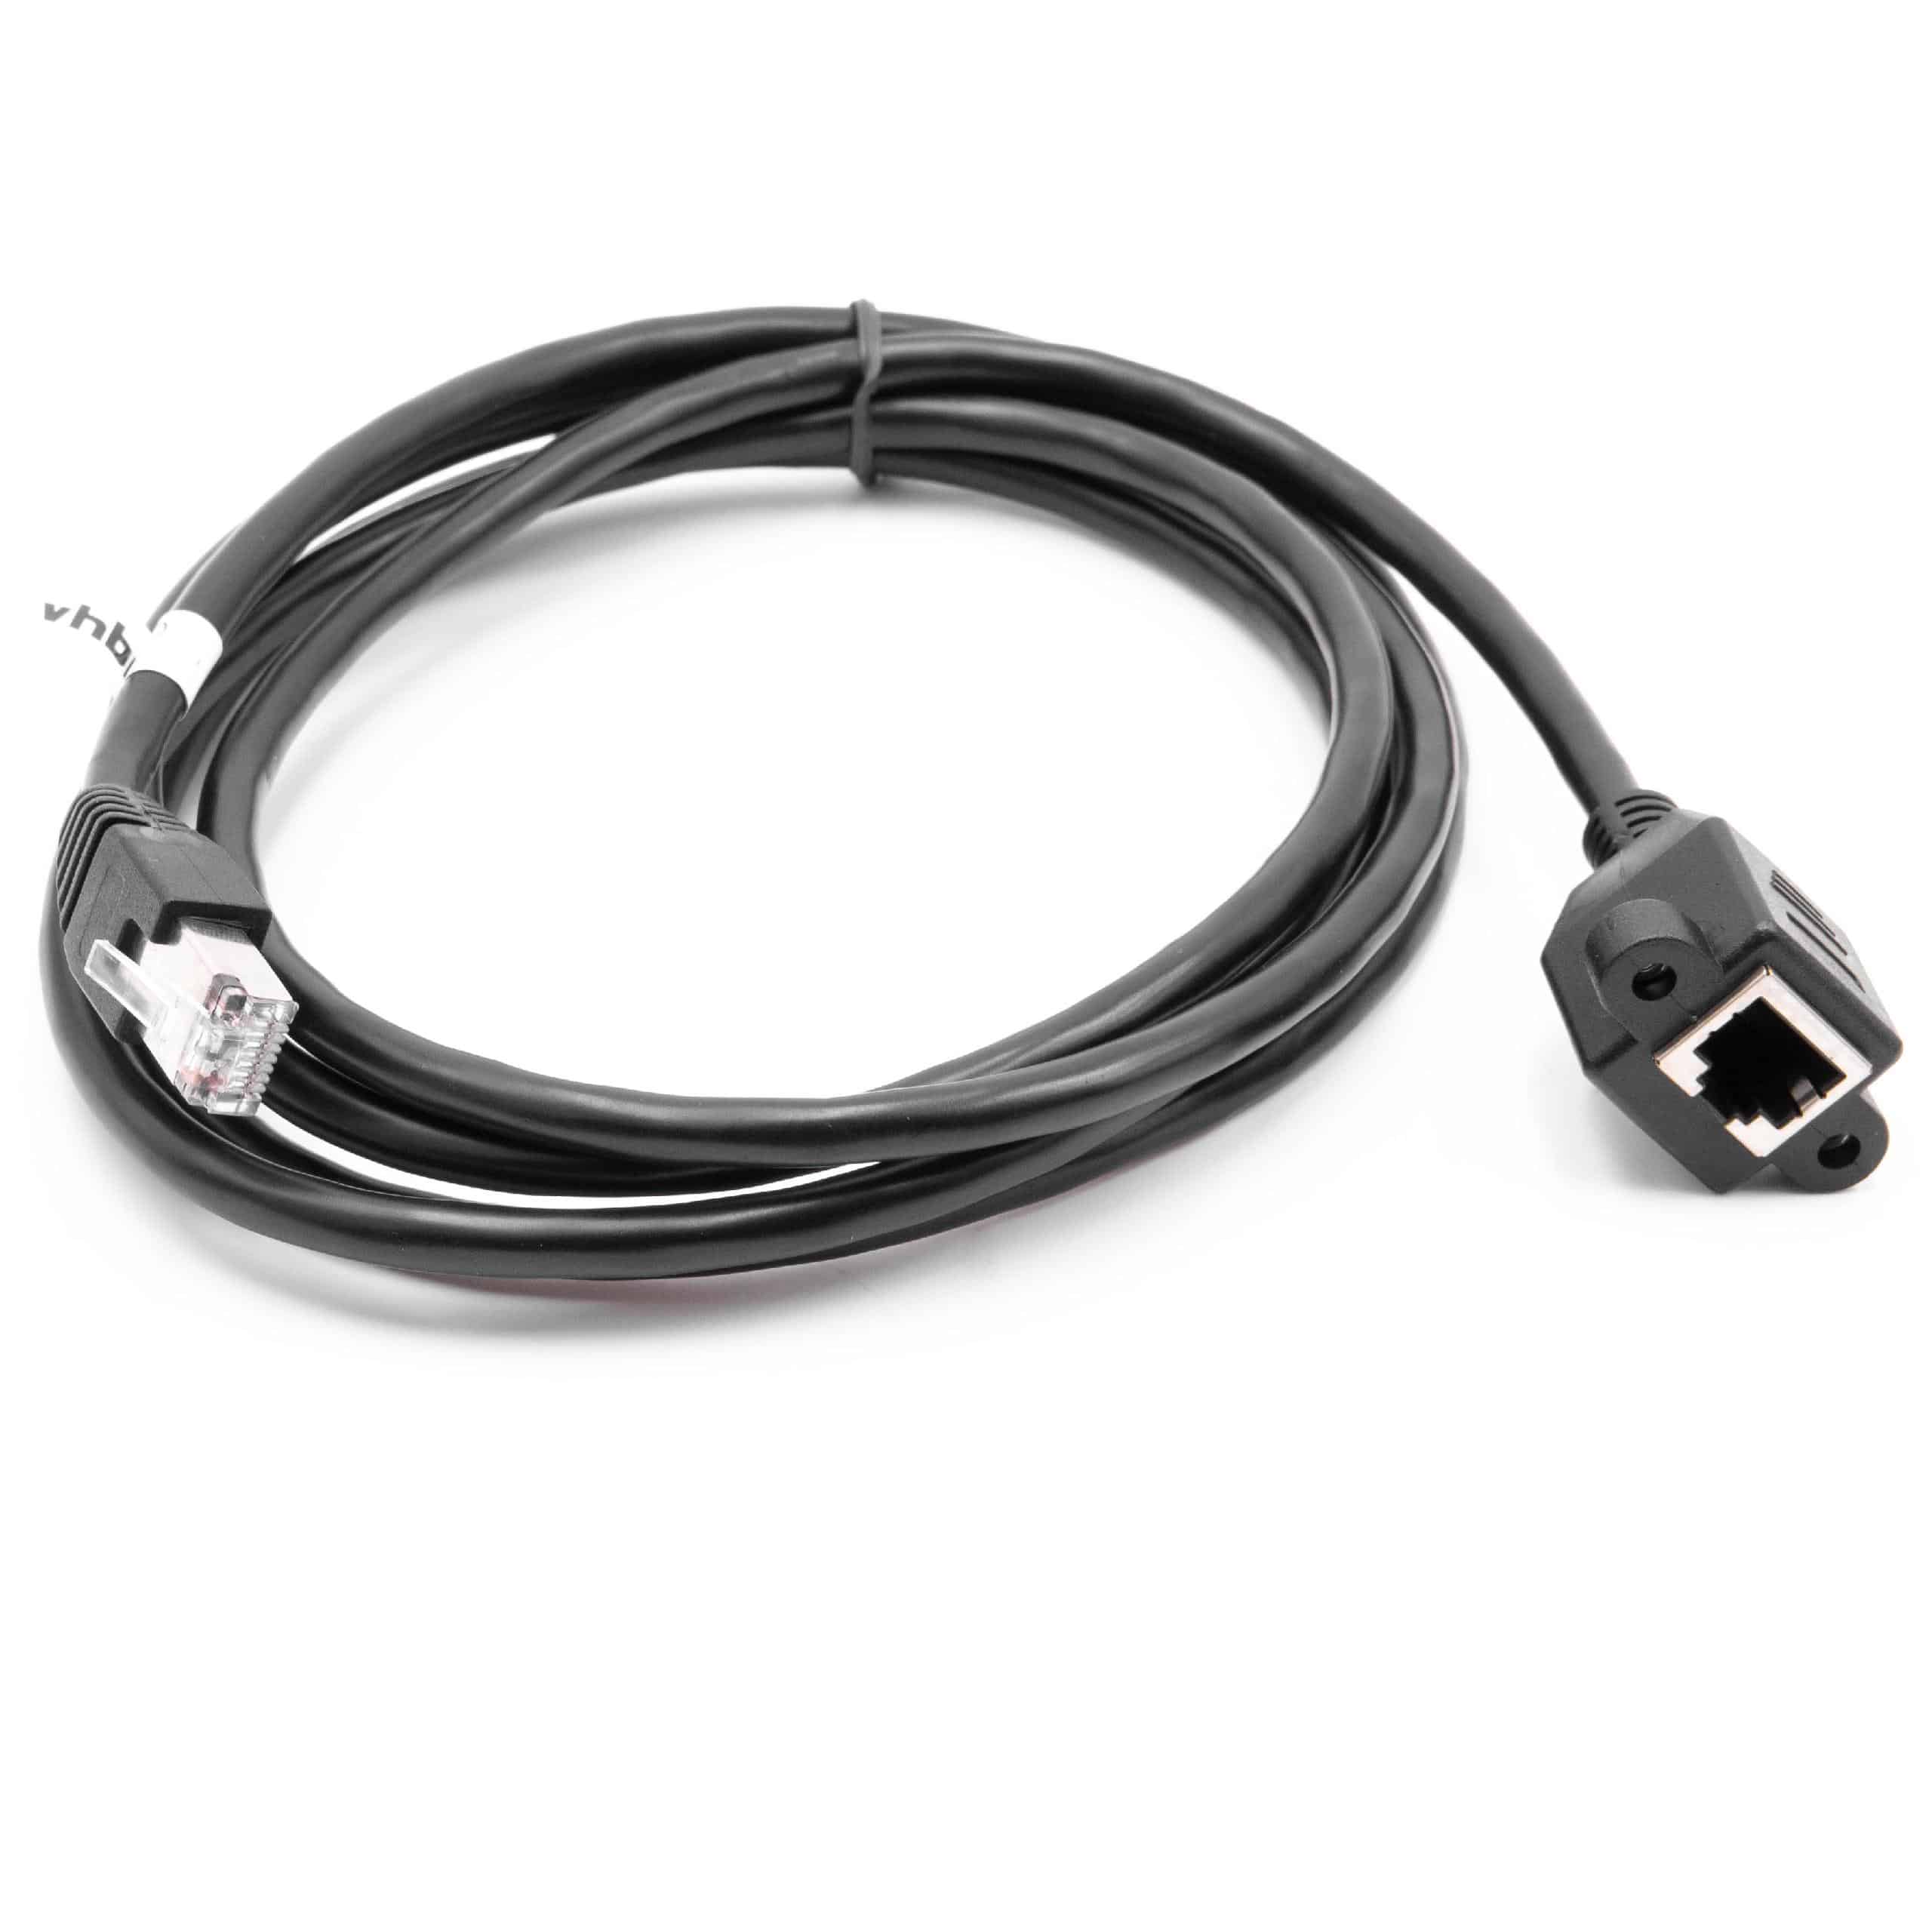 Cat6 Verlängerungskabel RJ45 Stecker auf RJ45 Buchse - Ethernet LAN Kabel mit RJ45 Einbaubuchse, 2 m